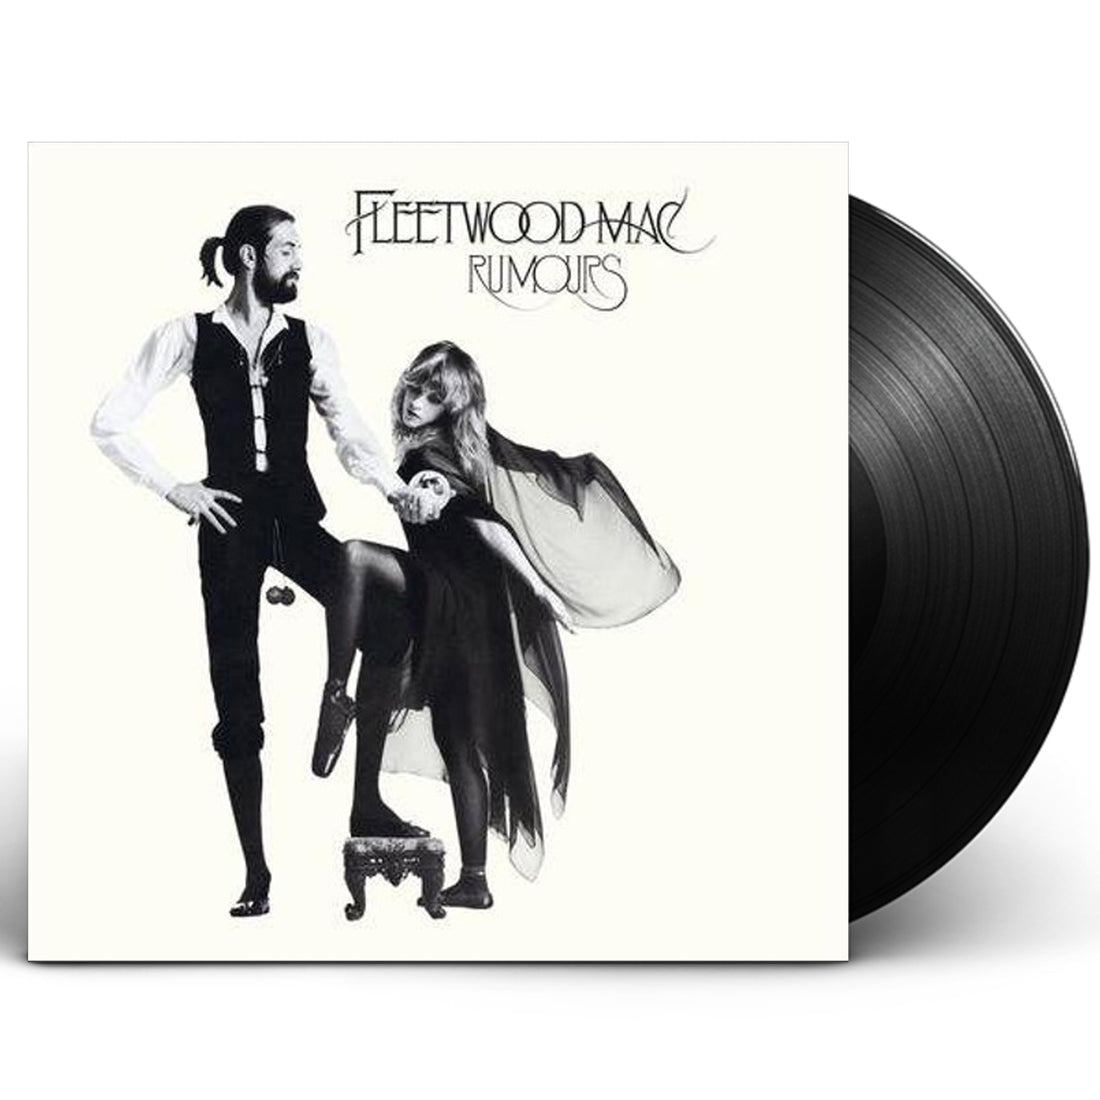 Fleetwood Mac "Rumours" LP Vinyl